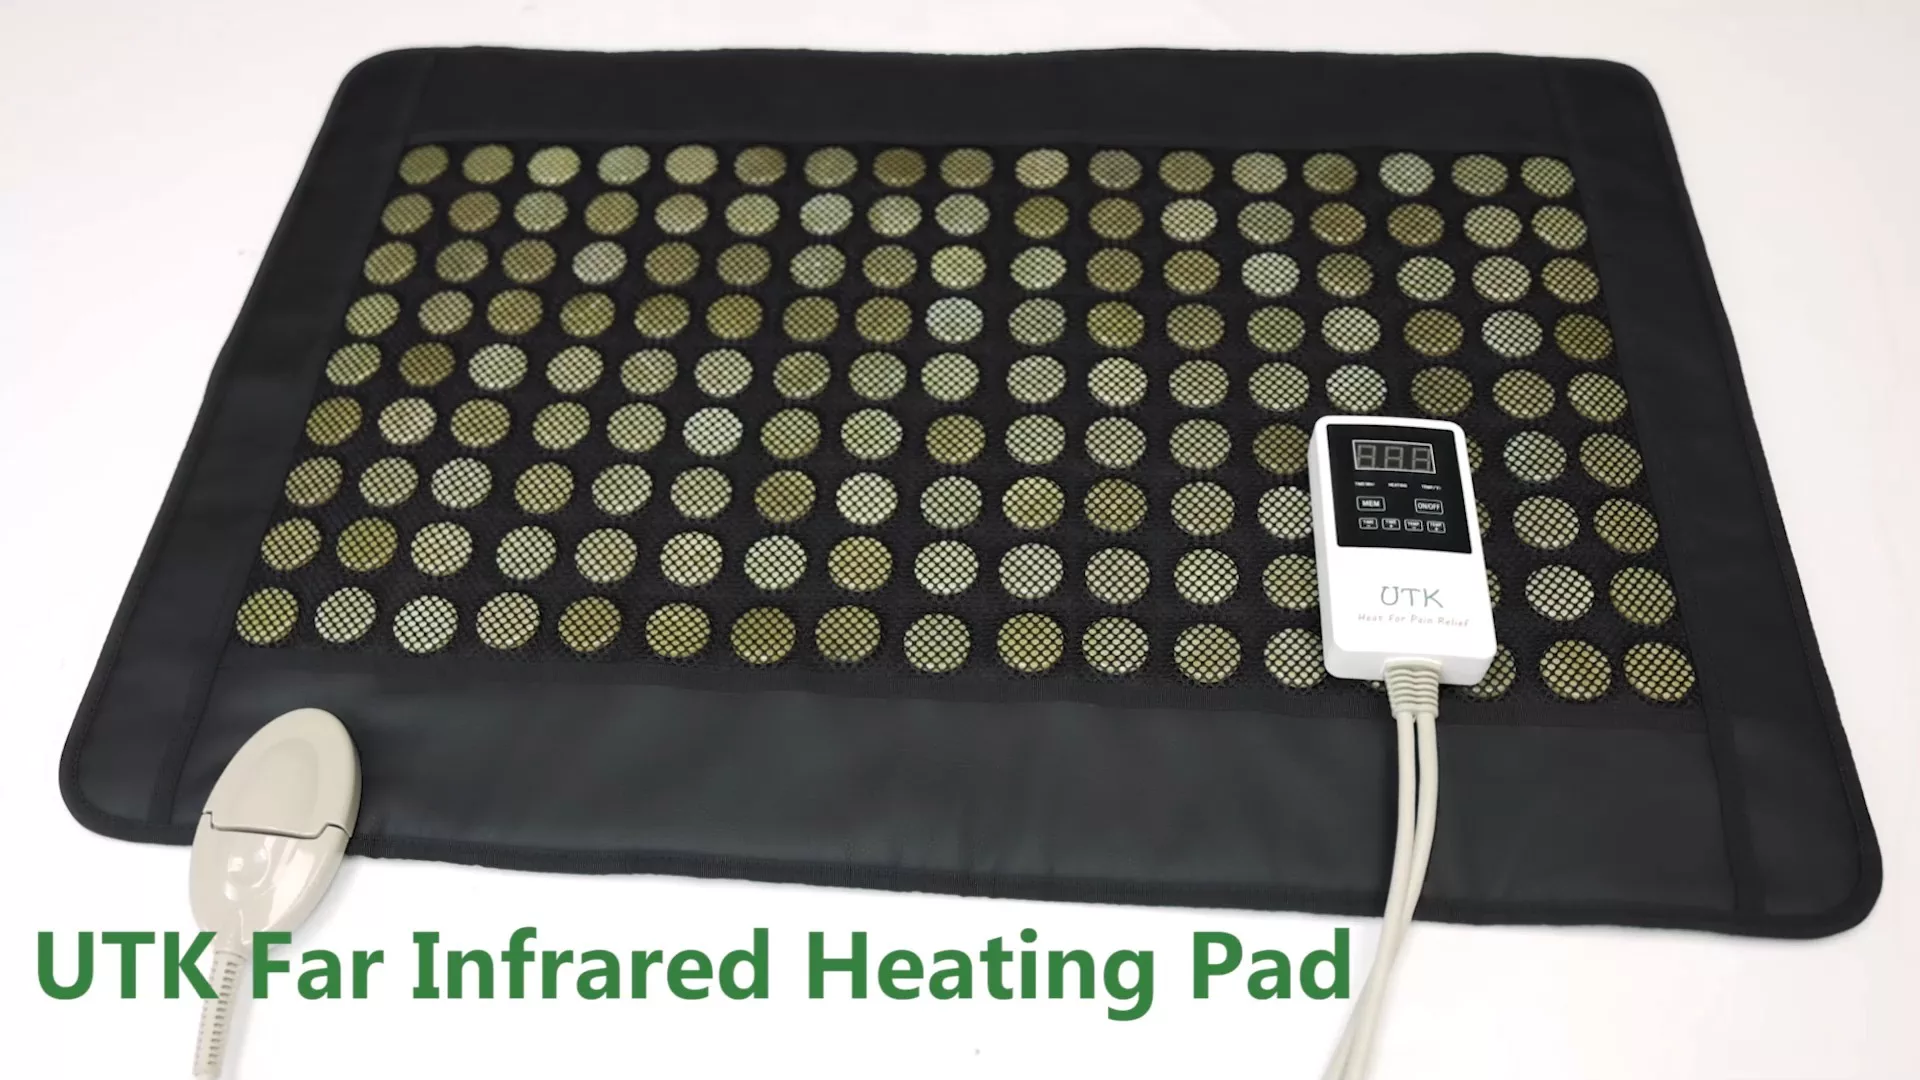 UTK Upgrade Jade - Almohadilla térmica infrarroja lejana para aliviar el dolor de espalda, terapia caliente infrarroja - Mediana [21x31], 153 piedras de jade, temperatura ajustable, apagado automático y bolsa de viaje 1